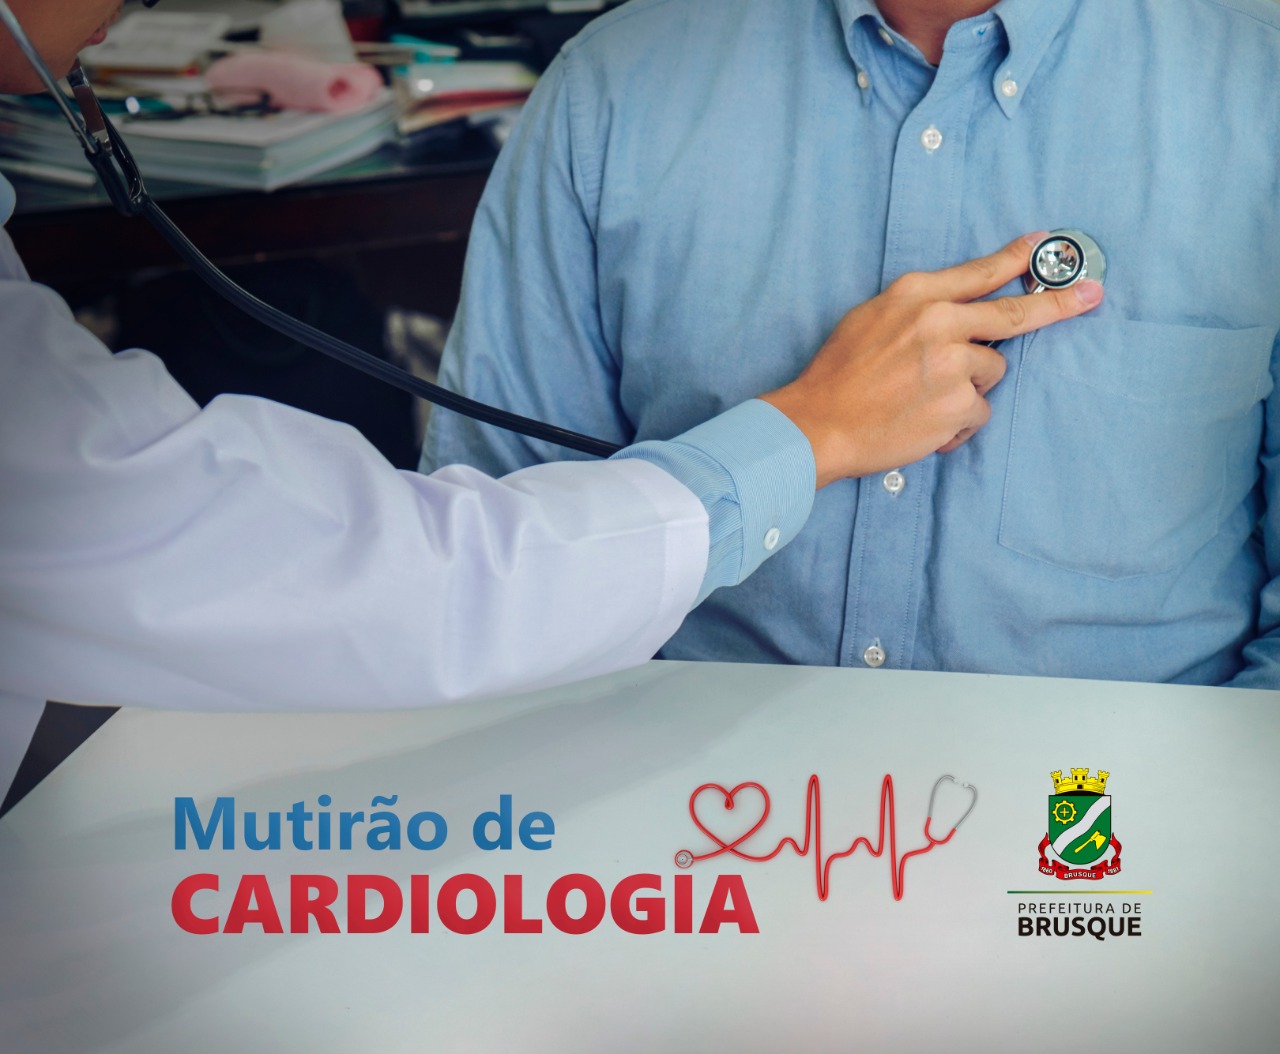 Mutirão vai zerar a demanda atual por consultas de cardiologia em Brusque